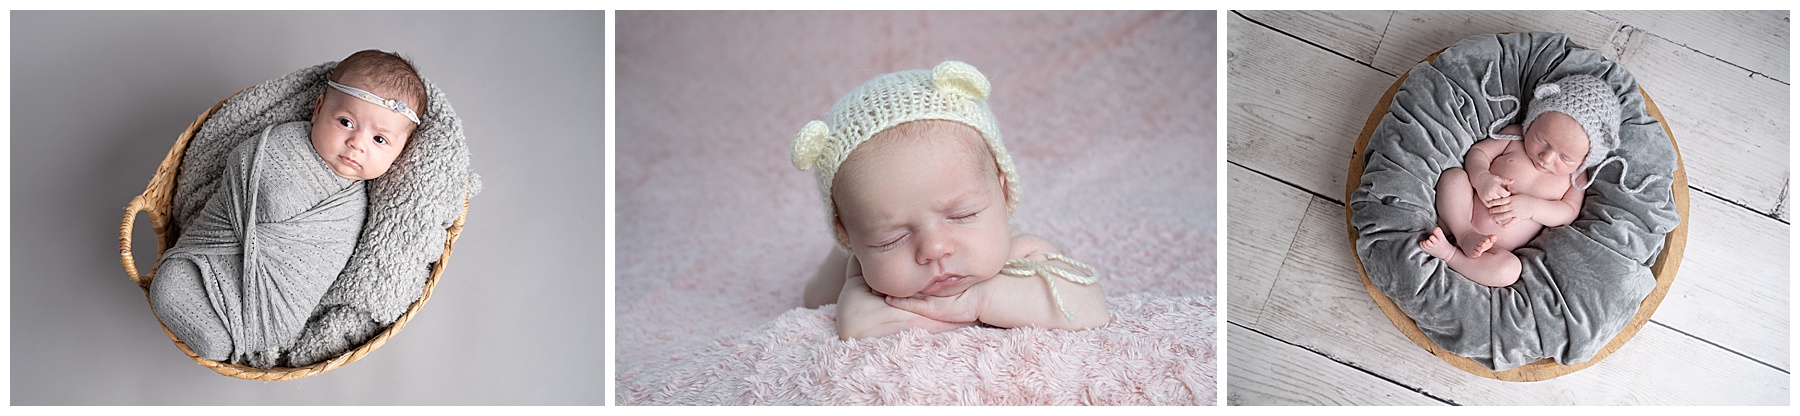 Photos of newborn babies 